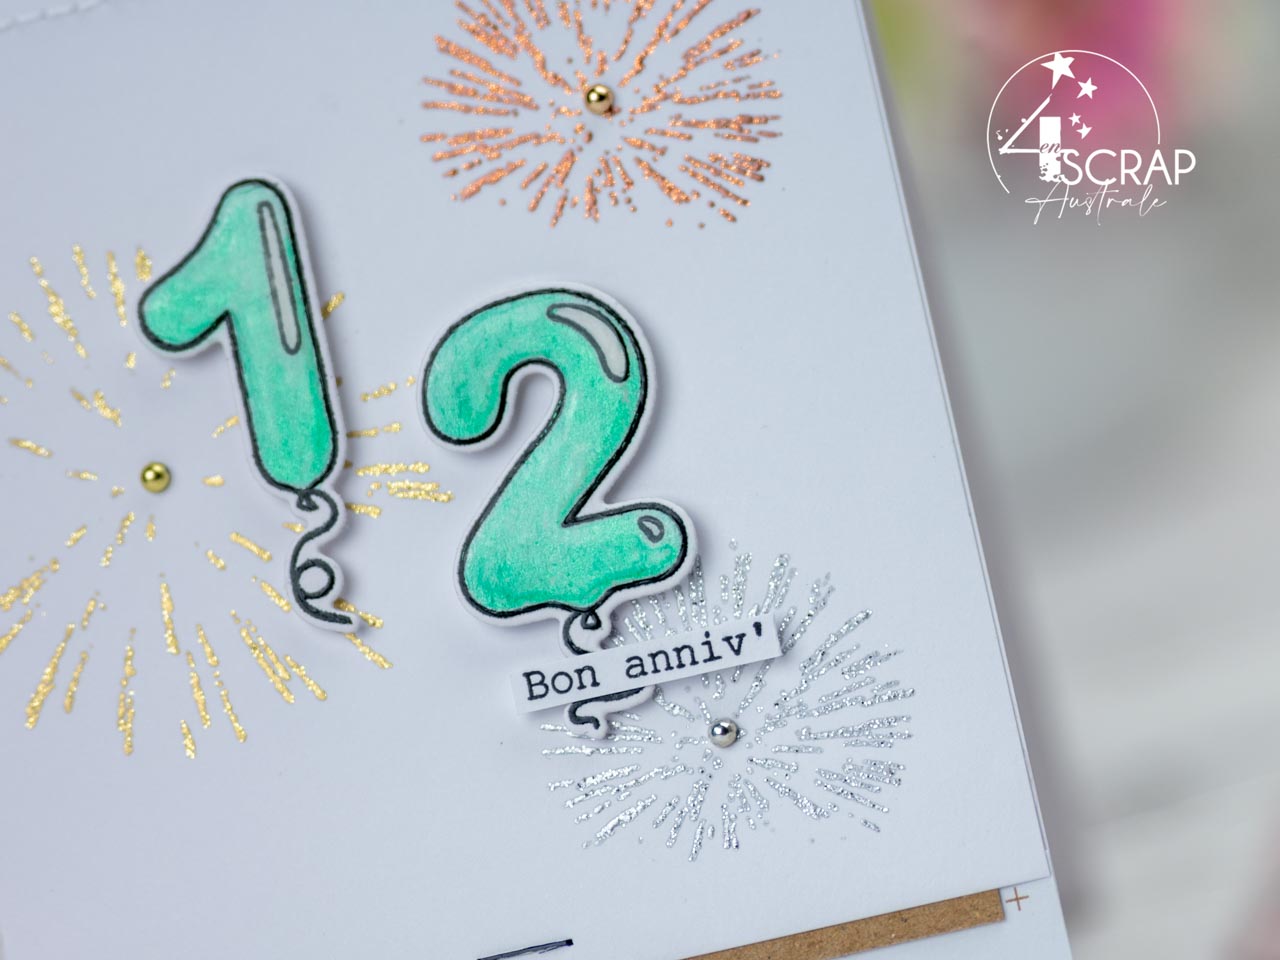 Création d'une carte d'anniversaire avec le chiffre 12 an ballons, feux d'artifices et définition pour la collection anniversaire de 4enscrap.